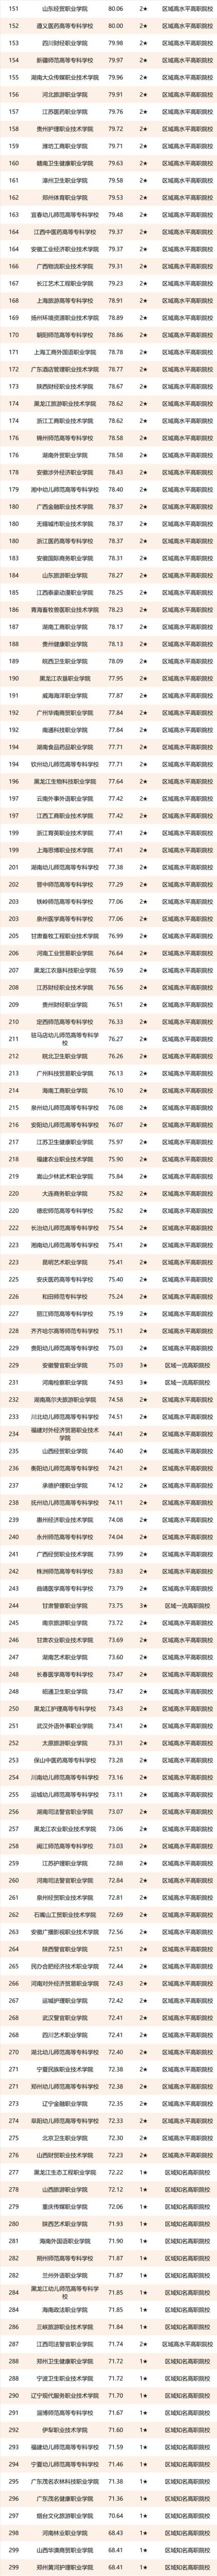 2021校友会中国高职院校排名，广东轻工职业技术学院第一